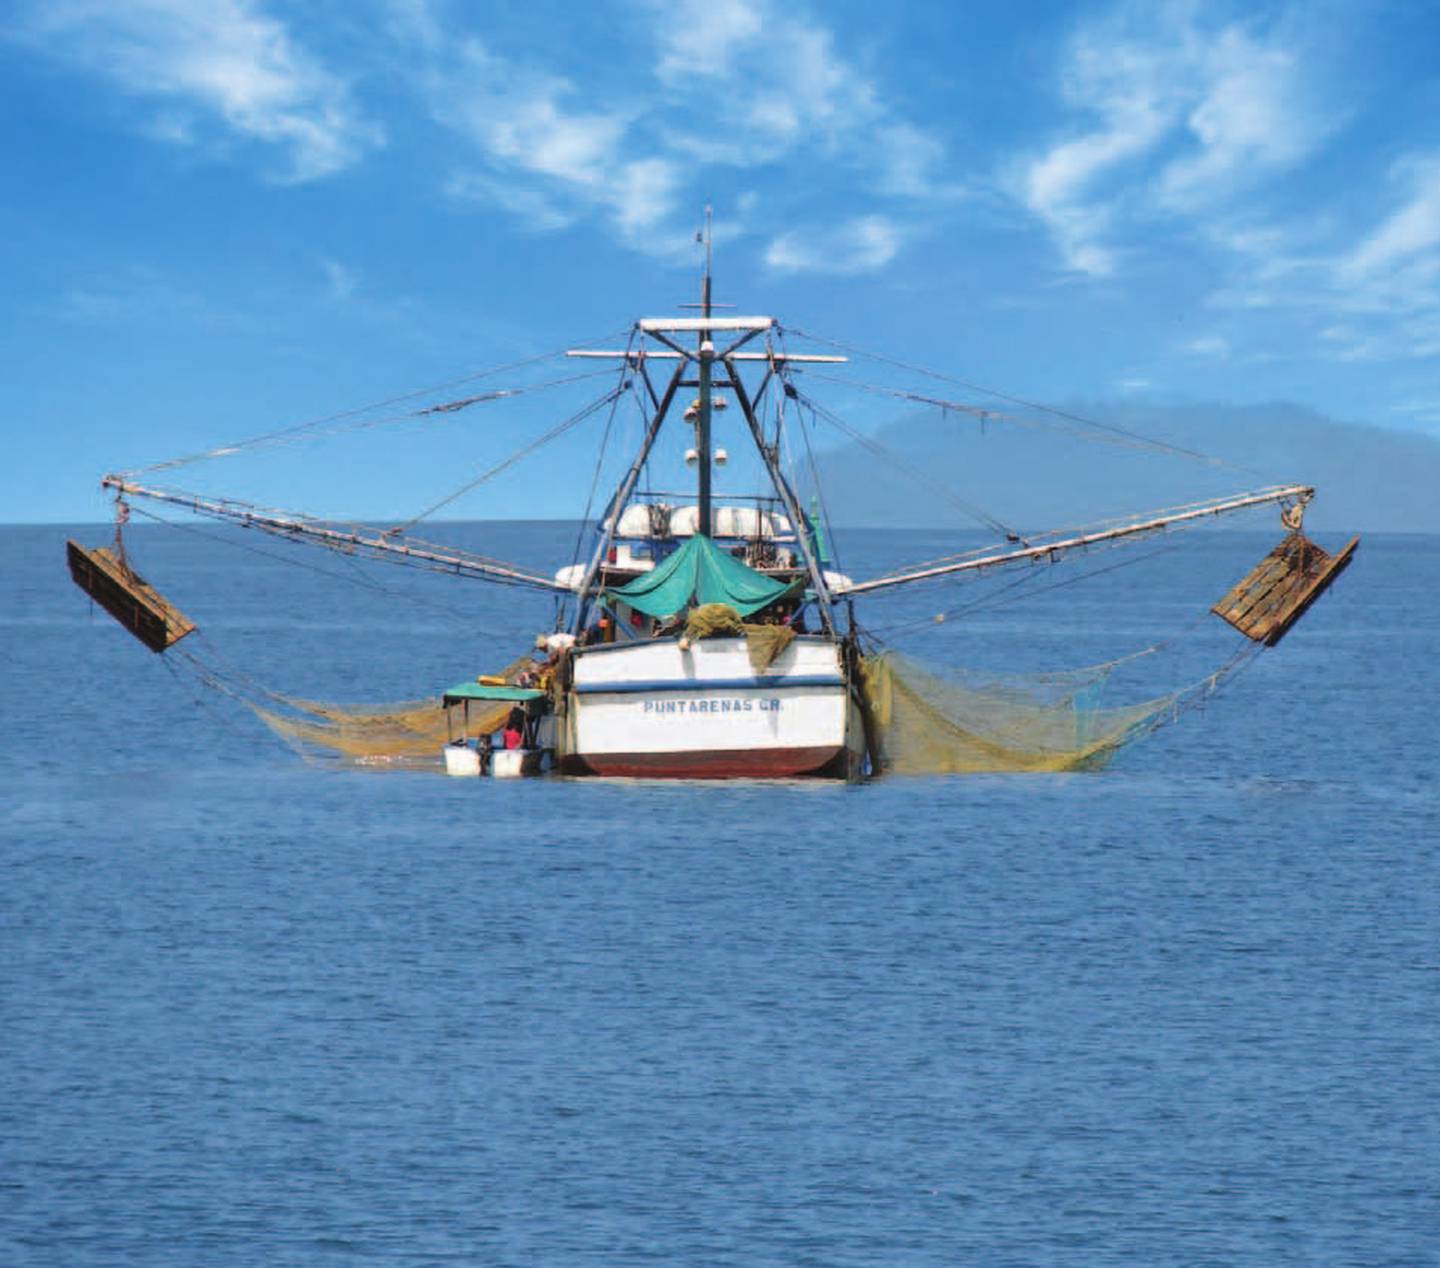 La pesca de arrastre es cuestionada por quienes velan por el bienestar del ecosistema marino, ya que consideran que las redes lanzadas al mar se llevan a su paso cualquier especie.